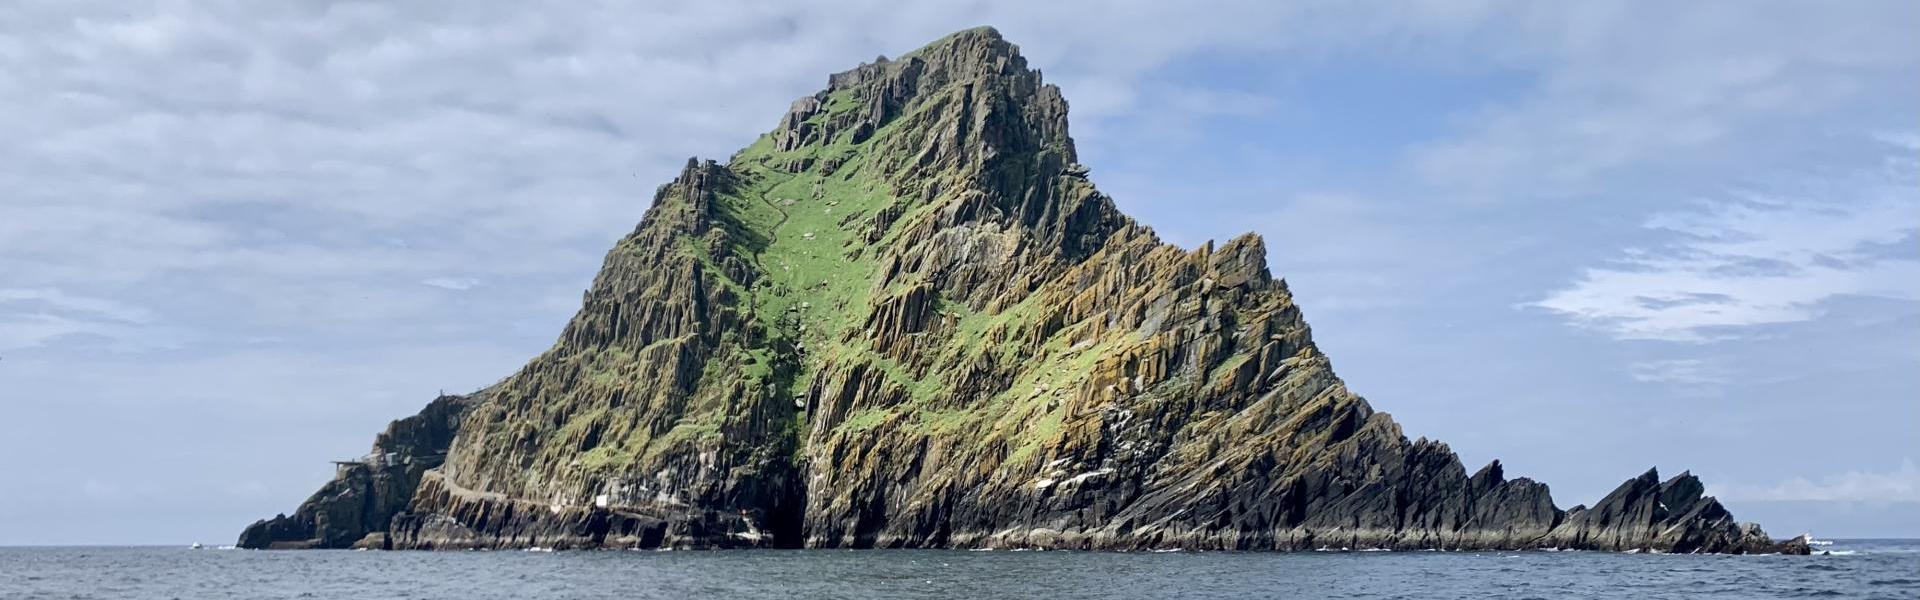 Irland, Kurs Südsüdwest: Eine Reise zu Destillerien, Natur und Kultur – von Markus Höller